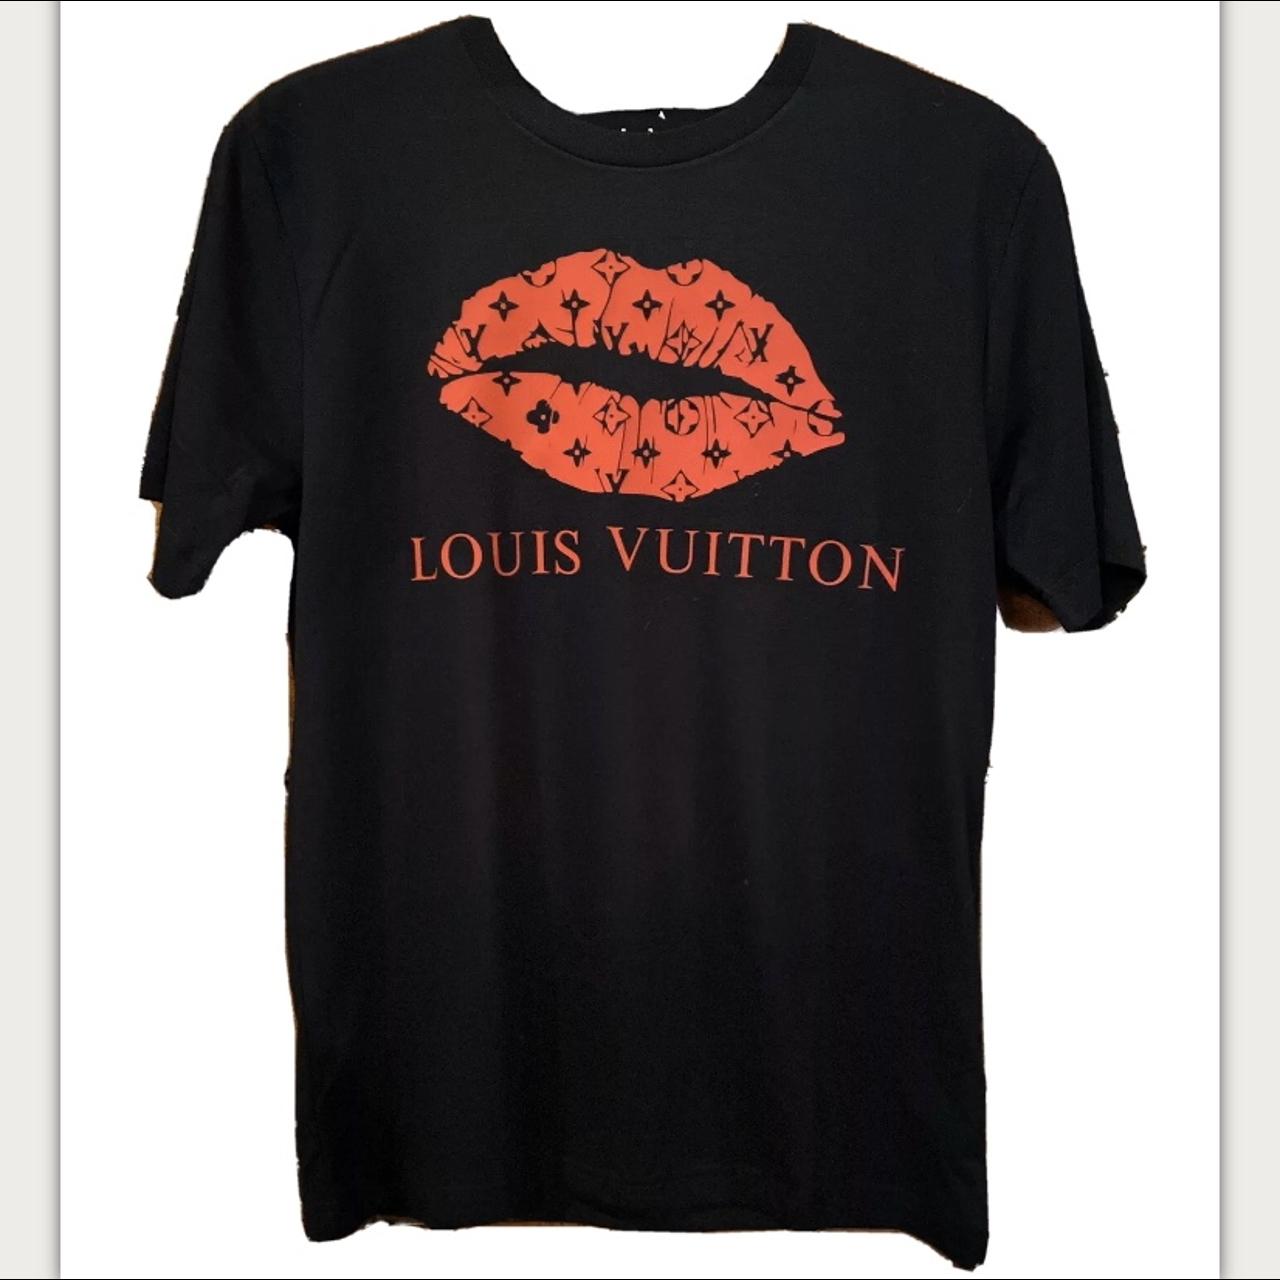 New women's Louis Vuitton black t-shirt with - Depop